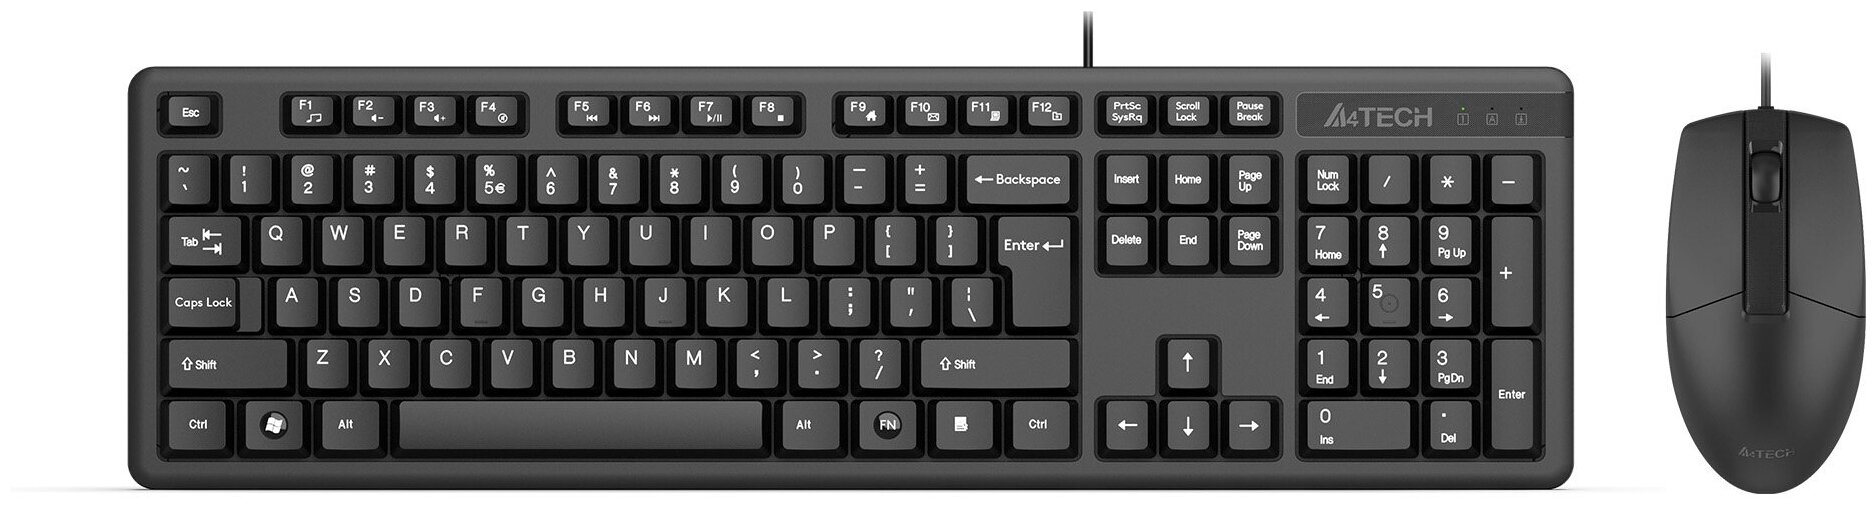 Клавиатура мышь A4Tech KK-3330 клавчерный мышьчерный USB